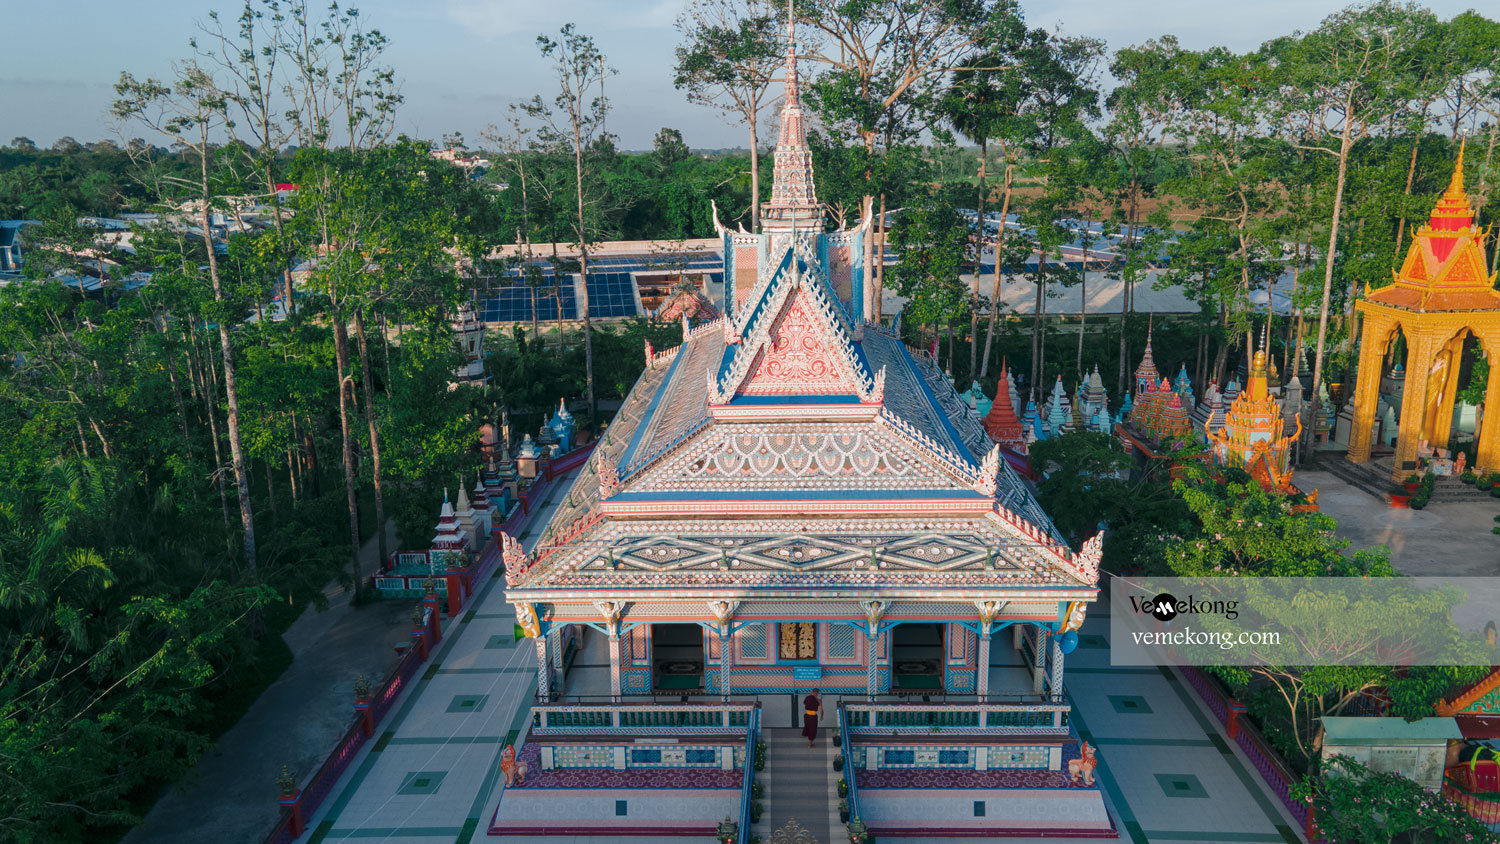 Bowl (Chen Kieu) Pagoda – A Colorful Soc Trang Khmer pagoda in Mekong Delta Vietnam